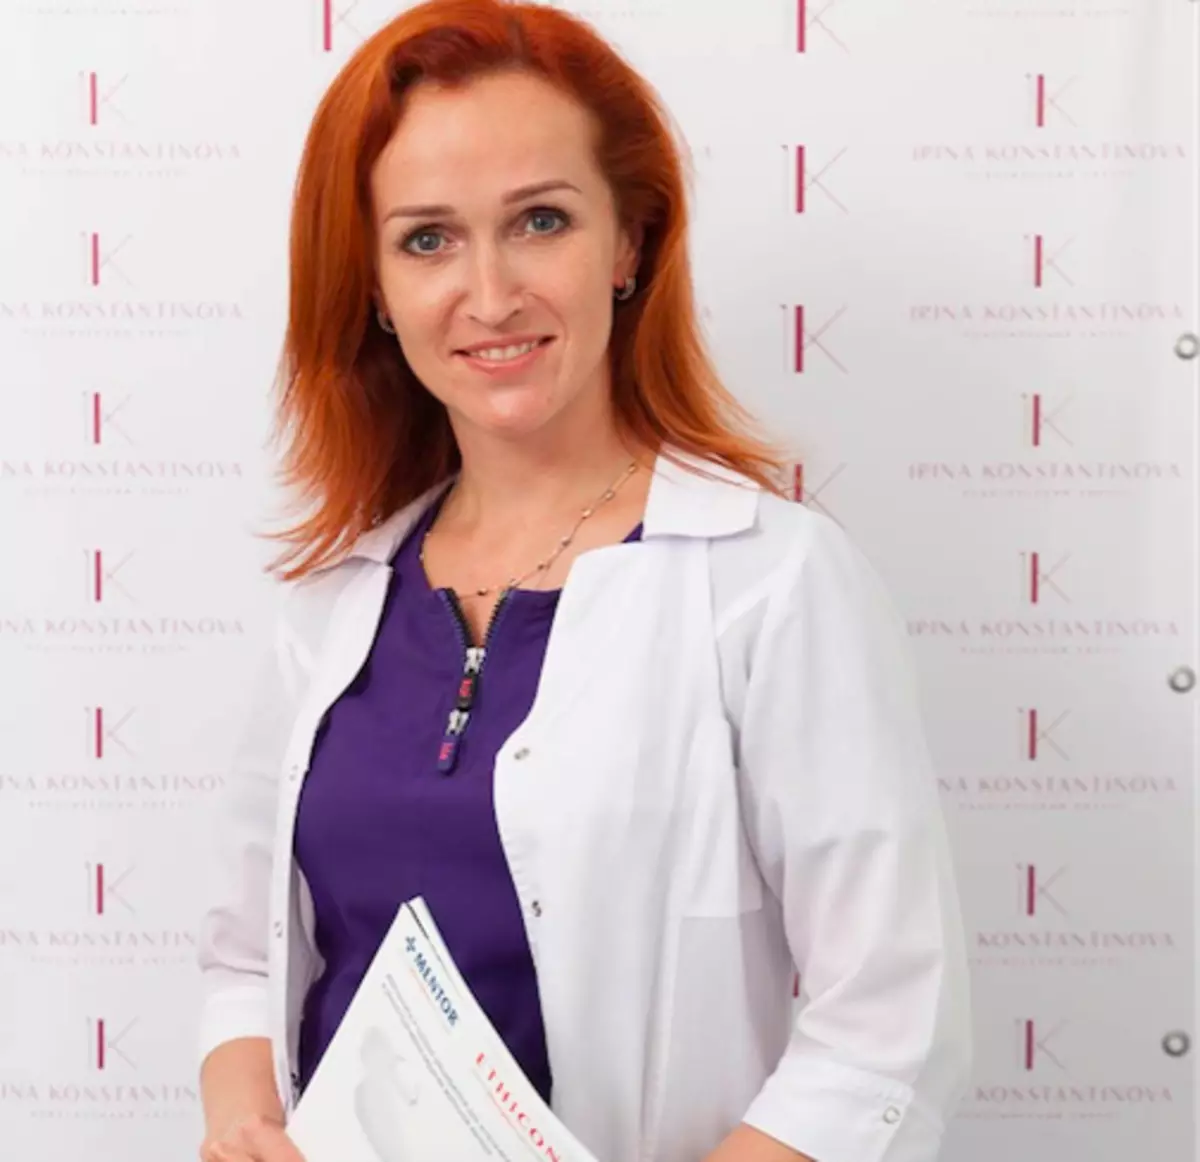 Chirurgien en plastique Irina Konstantinova